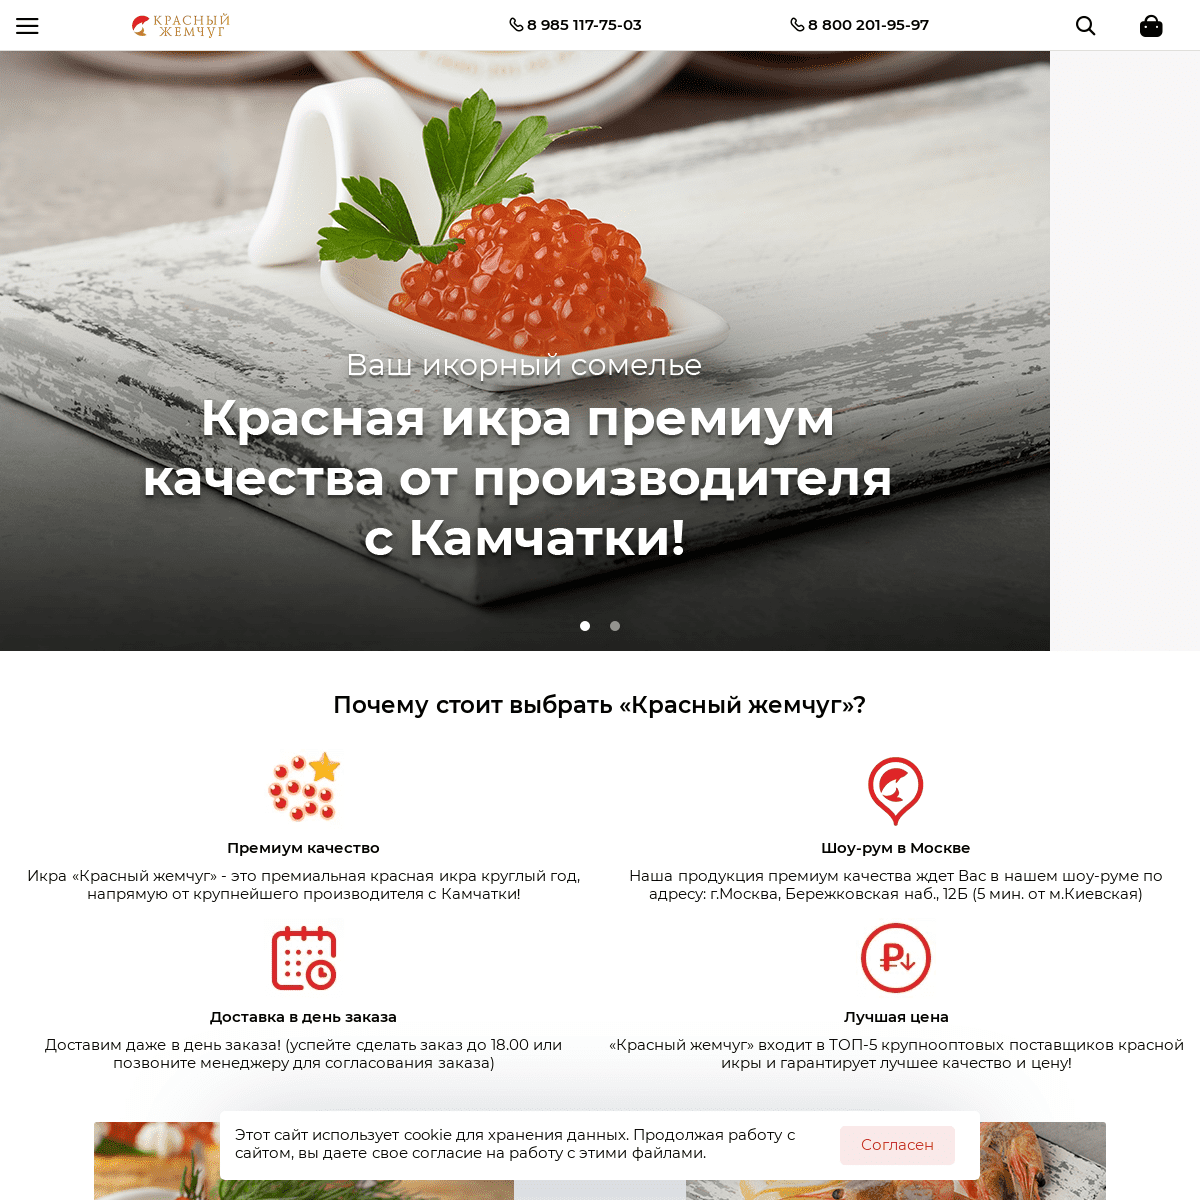 A complete backup of https://redgmshop.ru